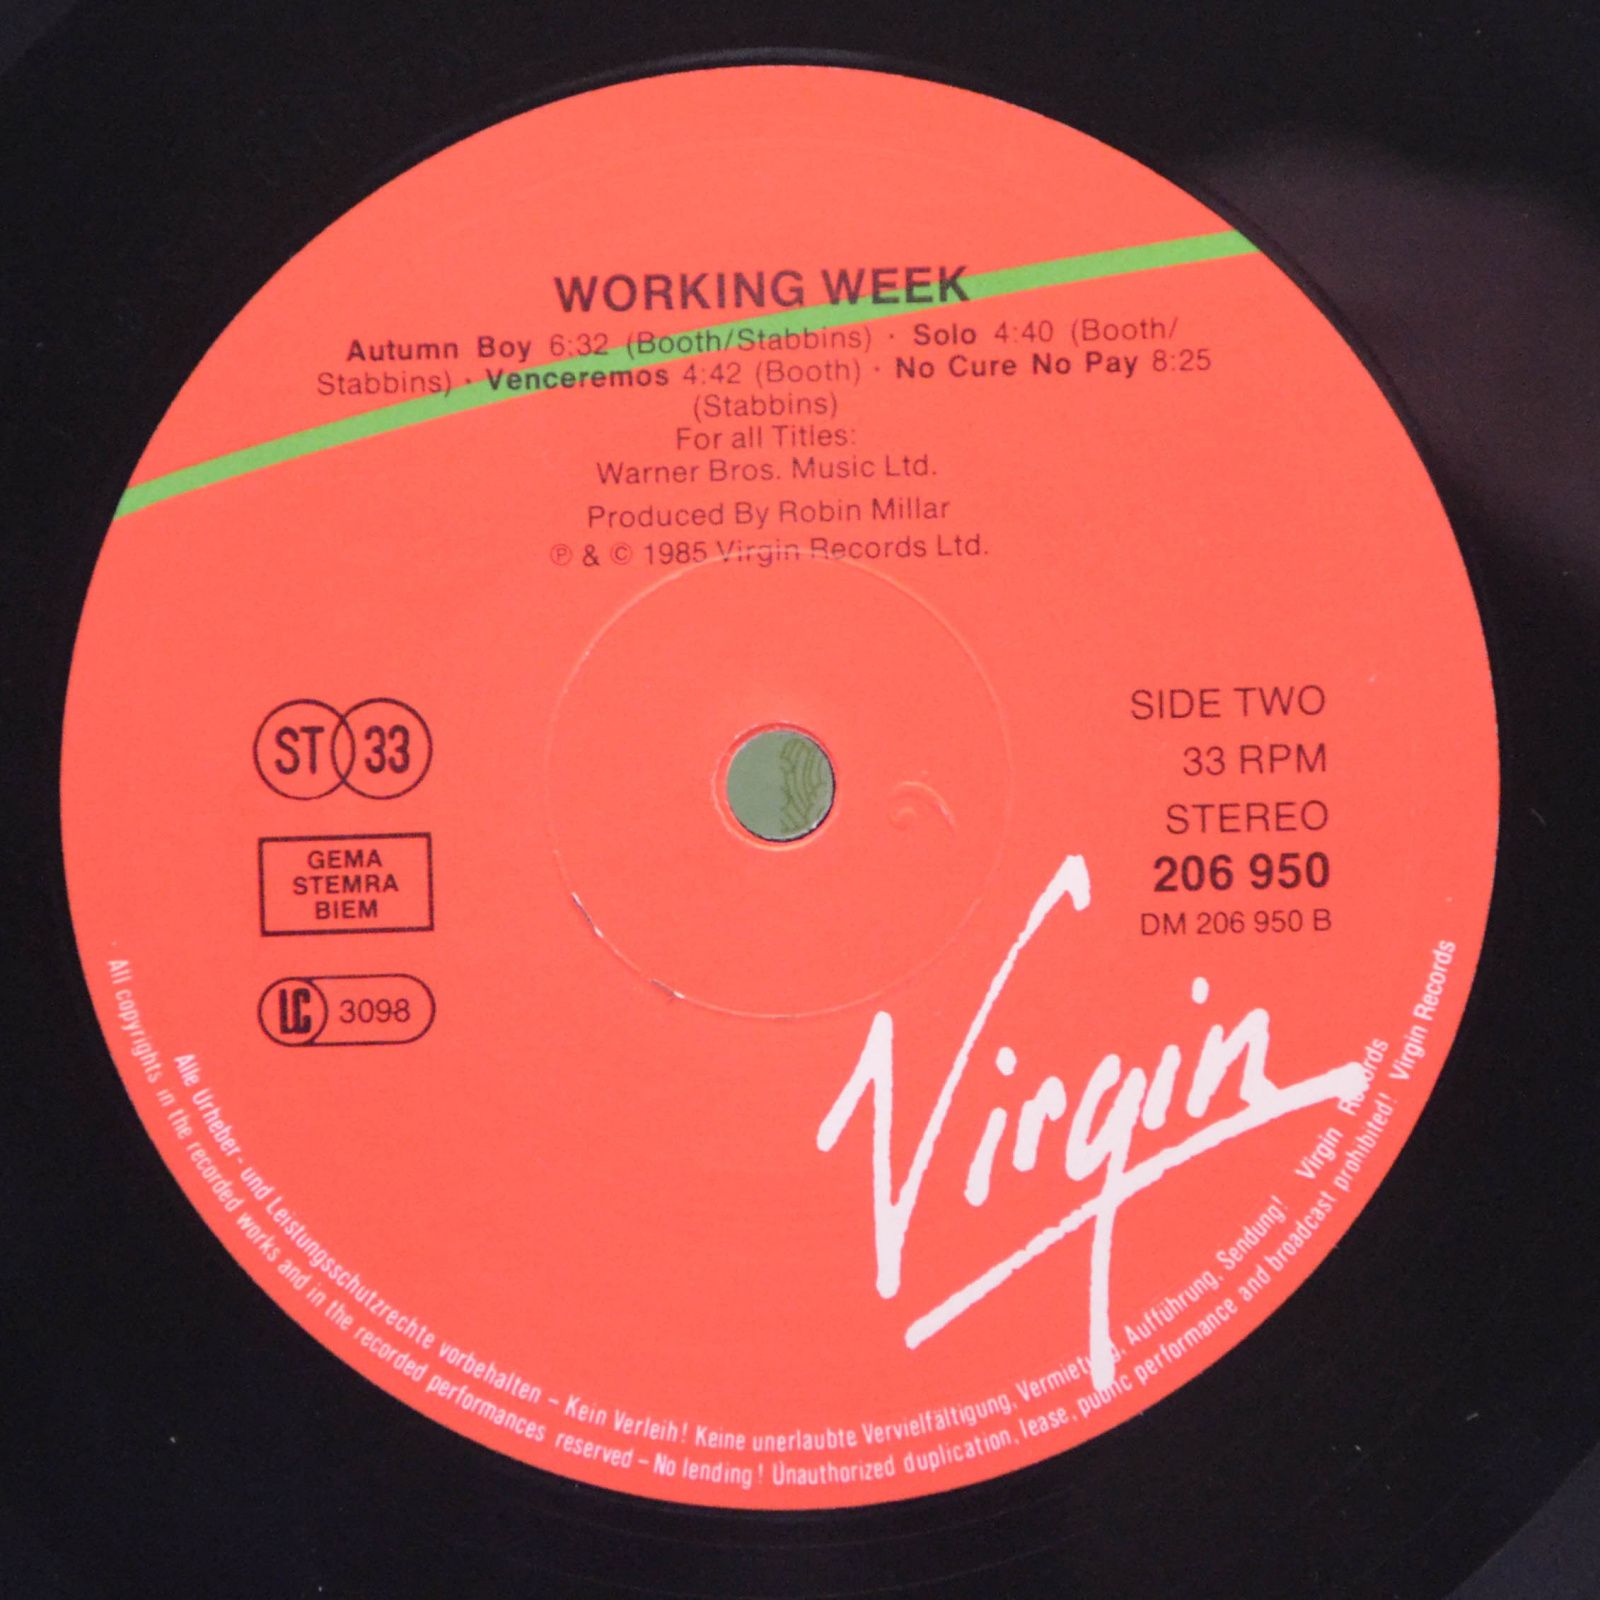 Working Week — Working Nights, 1985